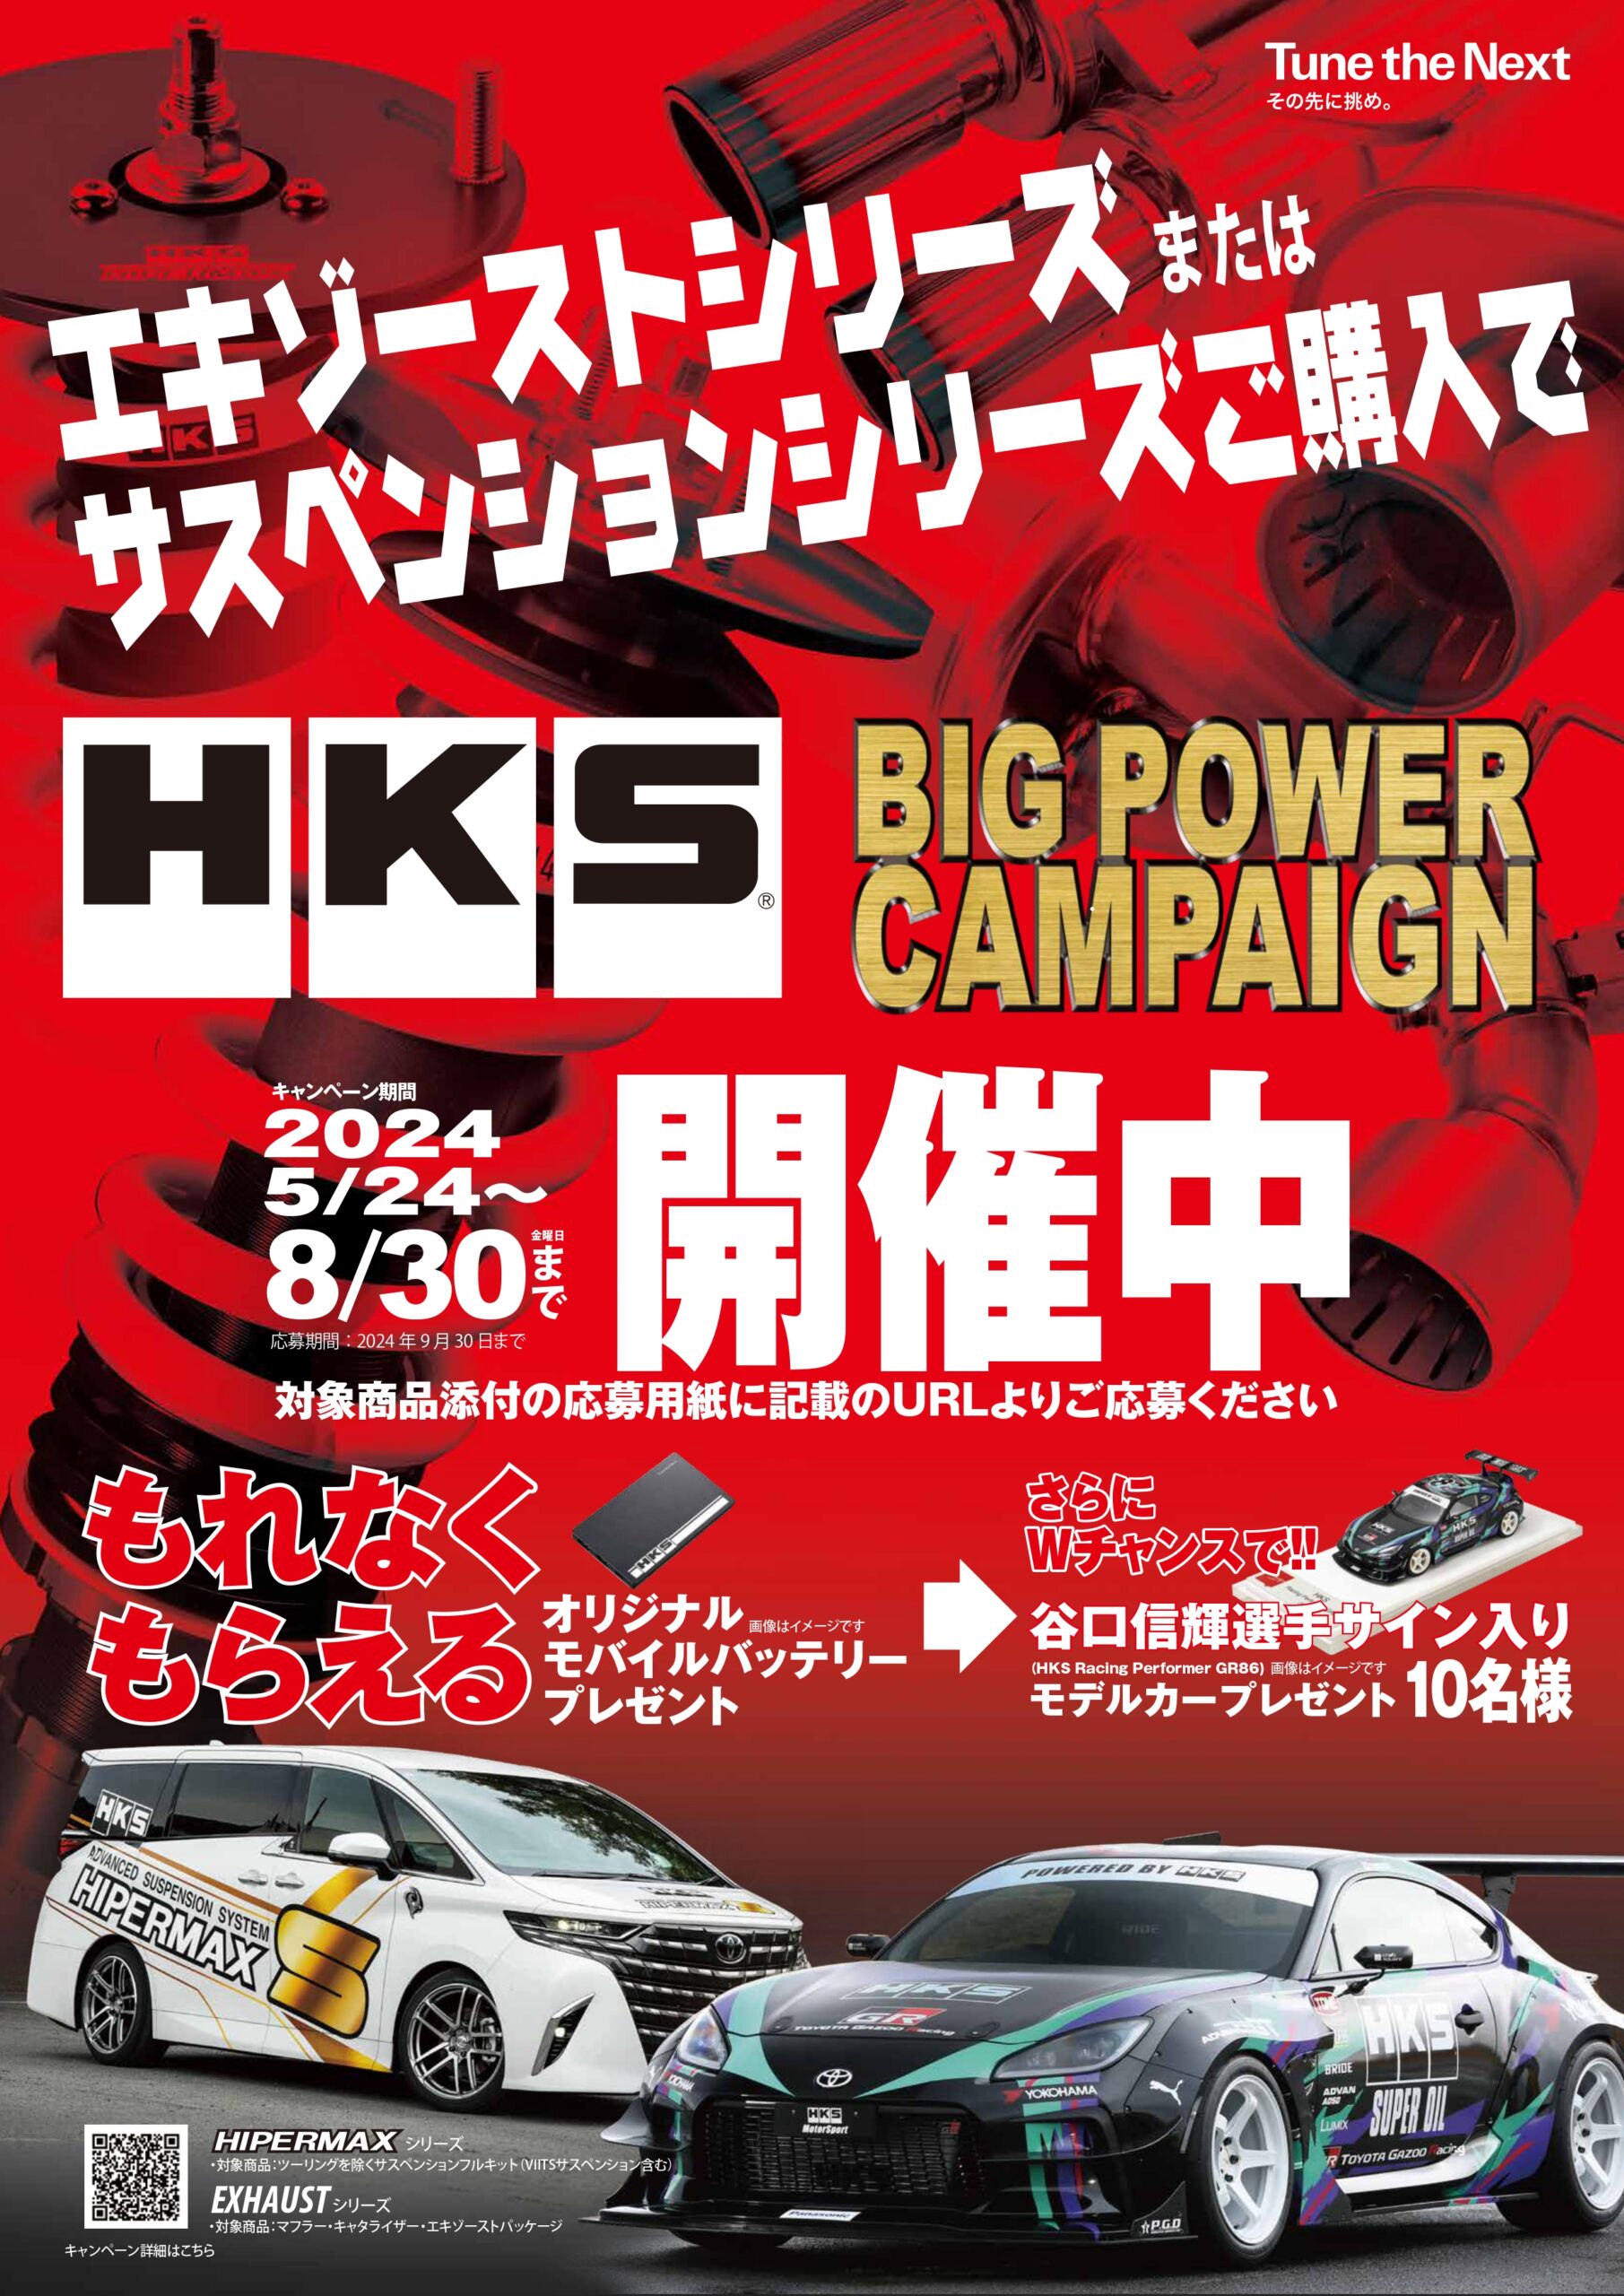 プレゼント品が盛りだくさんの「HKSビッグパワーキャンペーン2024」が8月30日まで開催される！